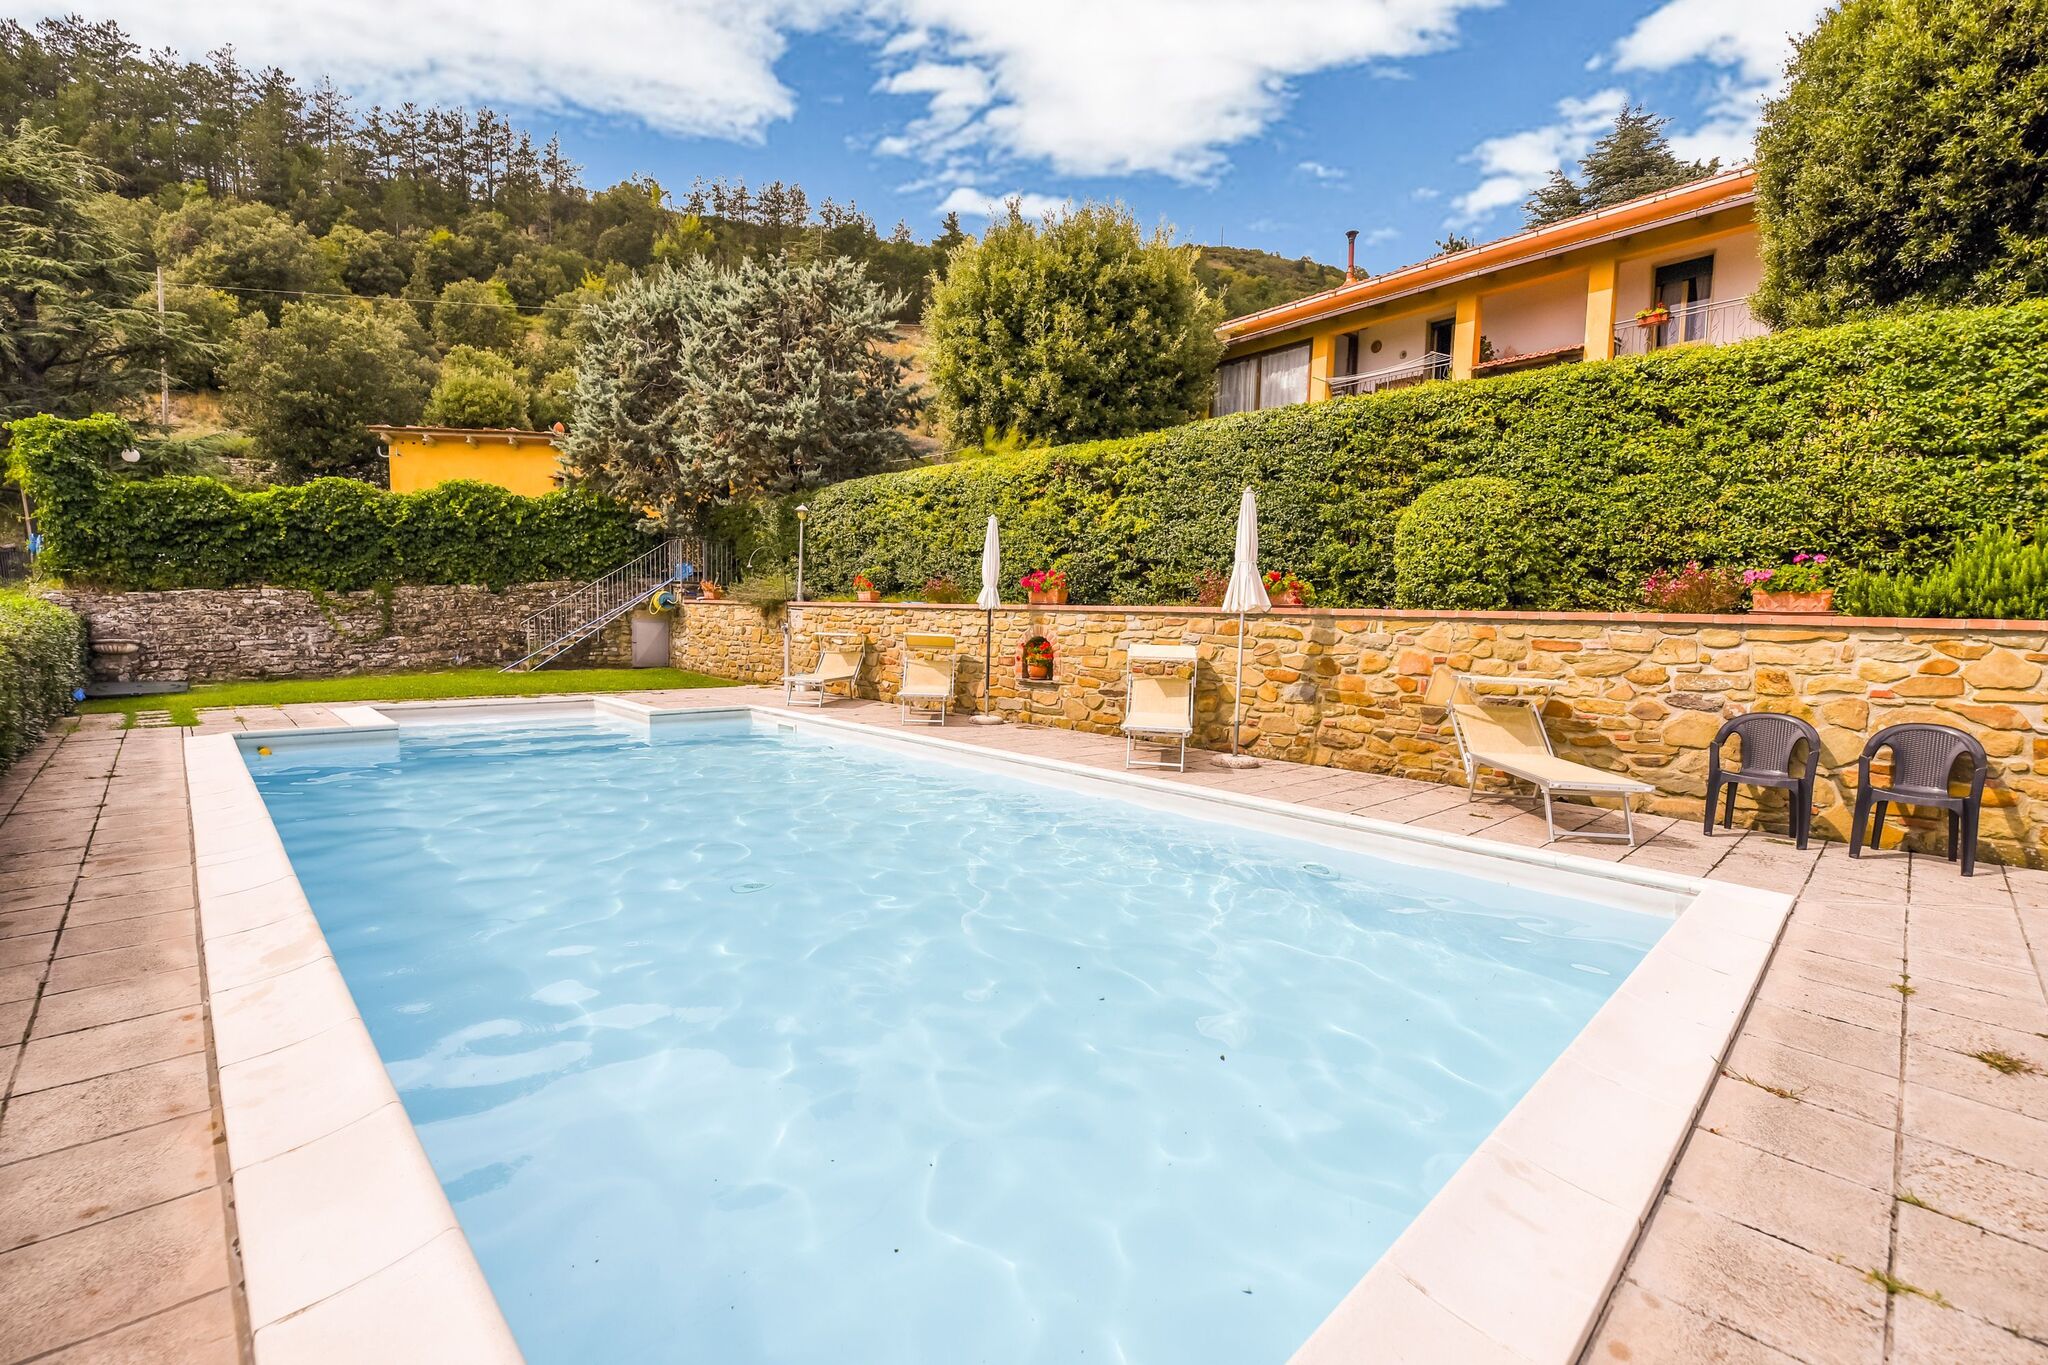 Cottage met fantastisch privé zwembad, mooi uitzicht, dichtbij Cortona